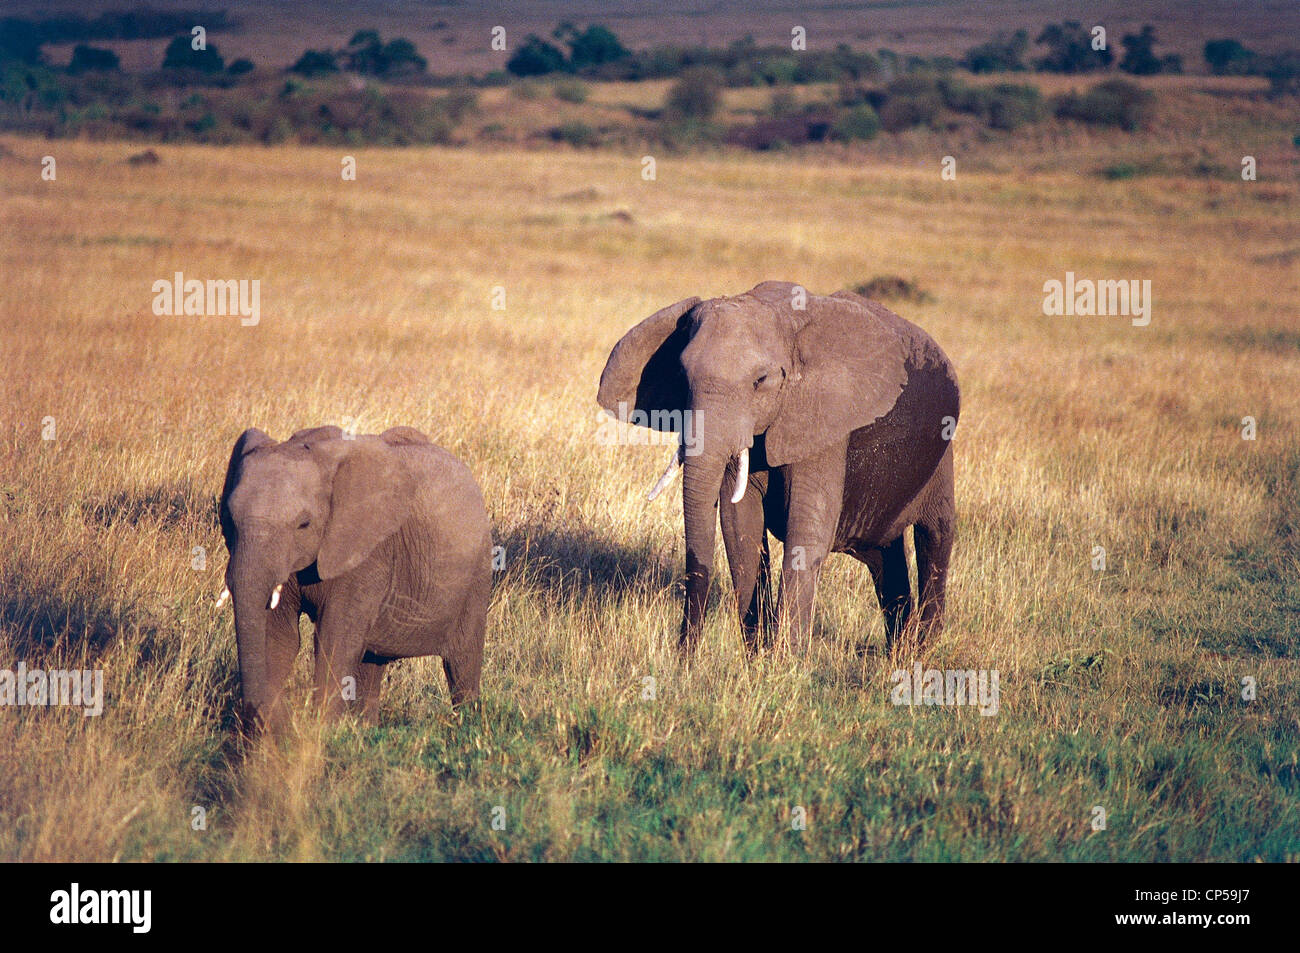 Zoologie - Elefantidi - Proboscideans - afrikanischen Elefanten (Loxodonta Africana). Kenia, Masai Mara Wildreservat. Stockfoto